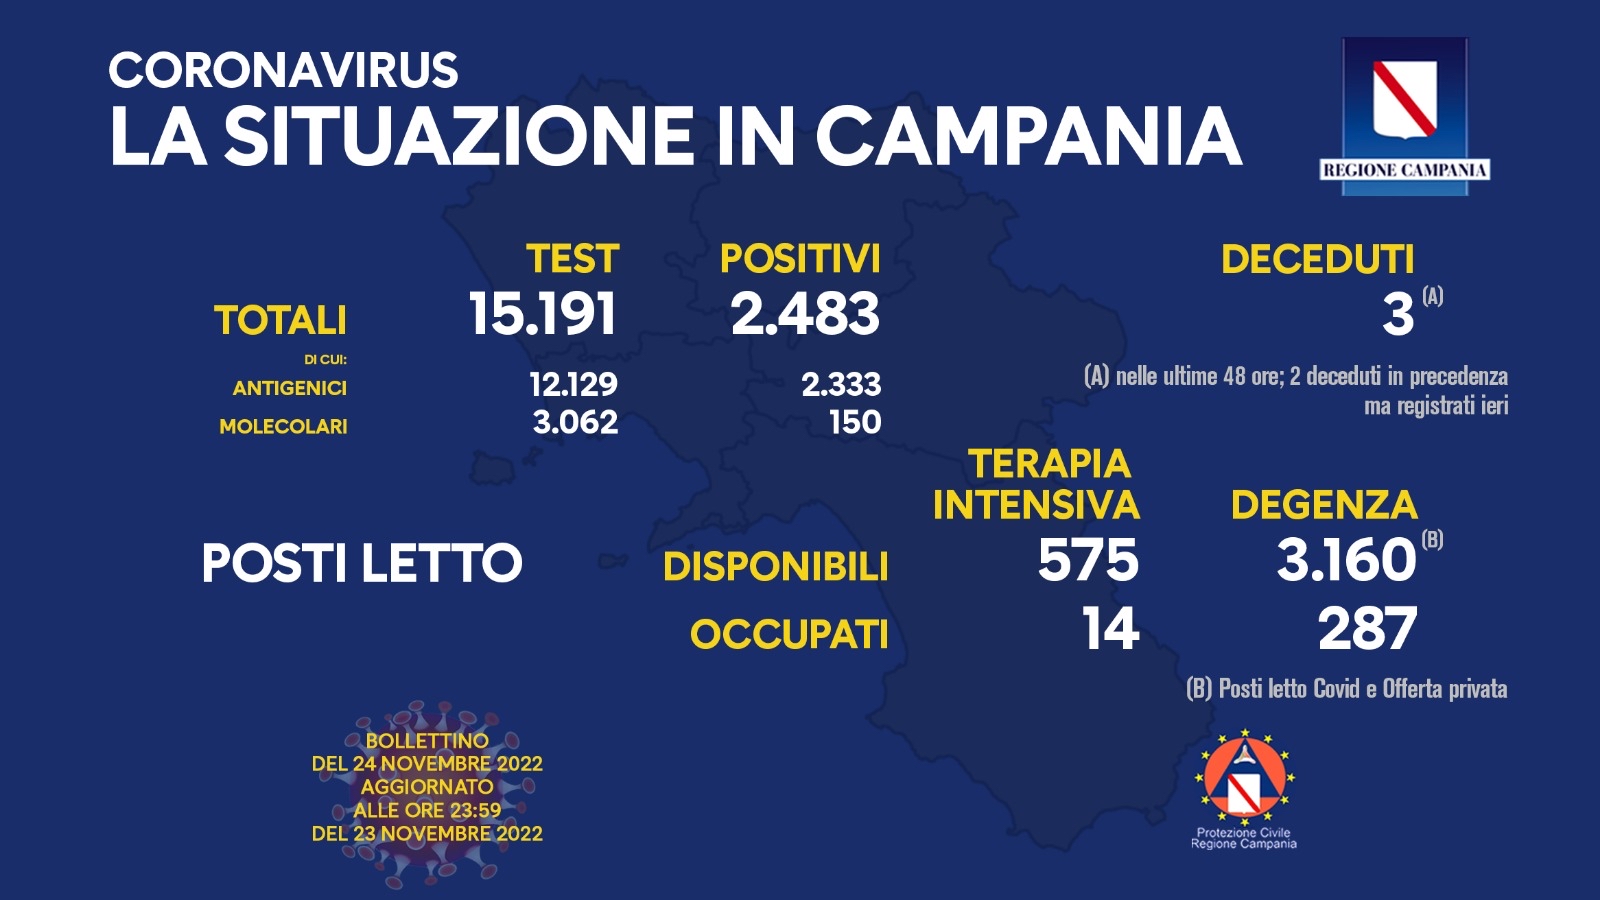 Regione Campania: Coronavirus, Unità di Crisi, Bollettino, 2.483 casi positivi, 3 decessi